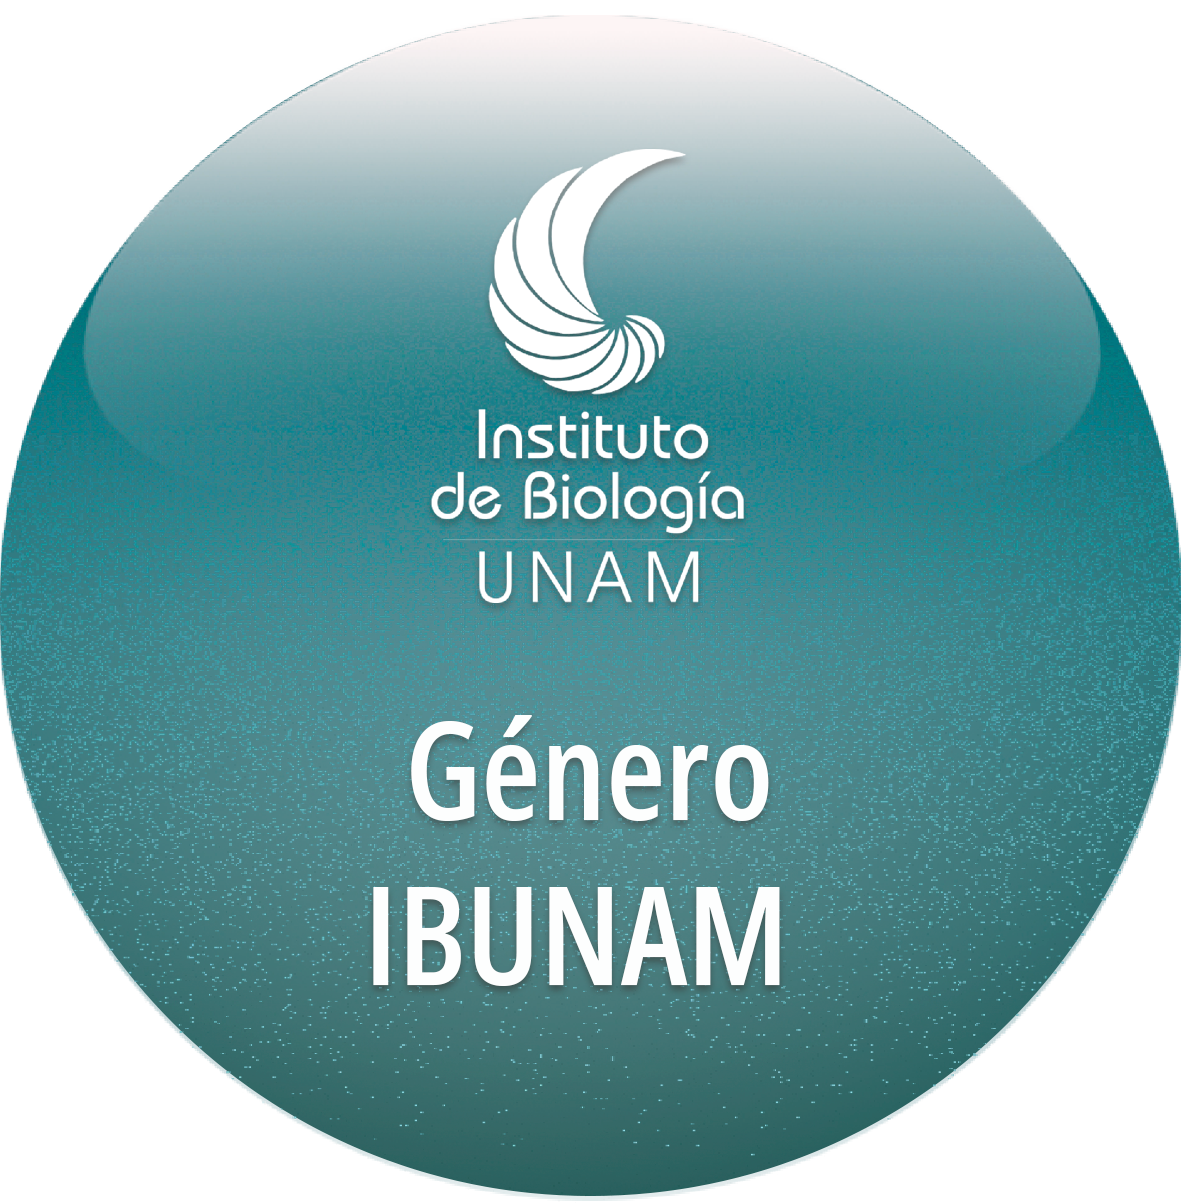 Género IBUNAM - Instituto de Biología, UNAM